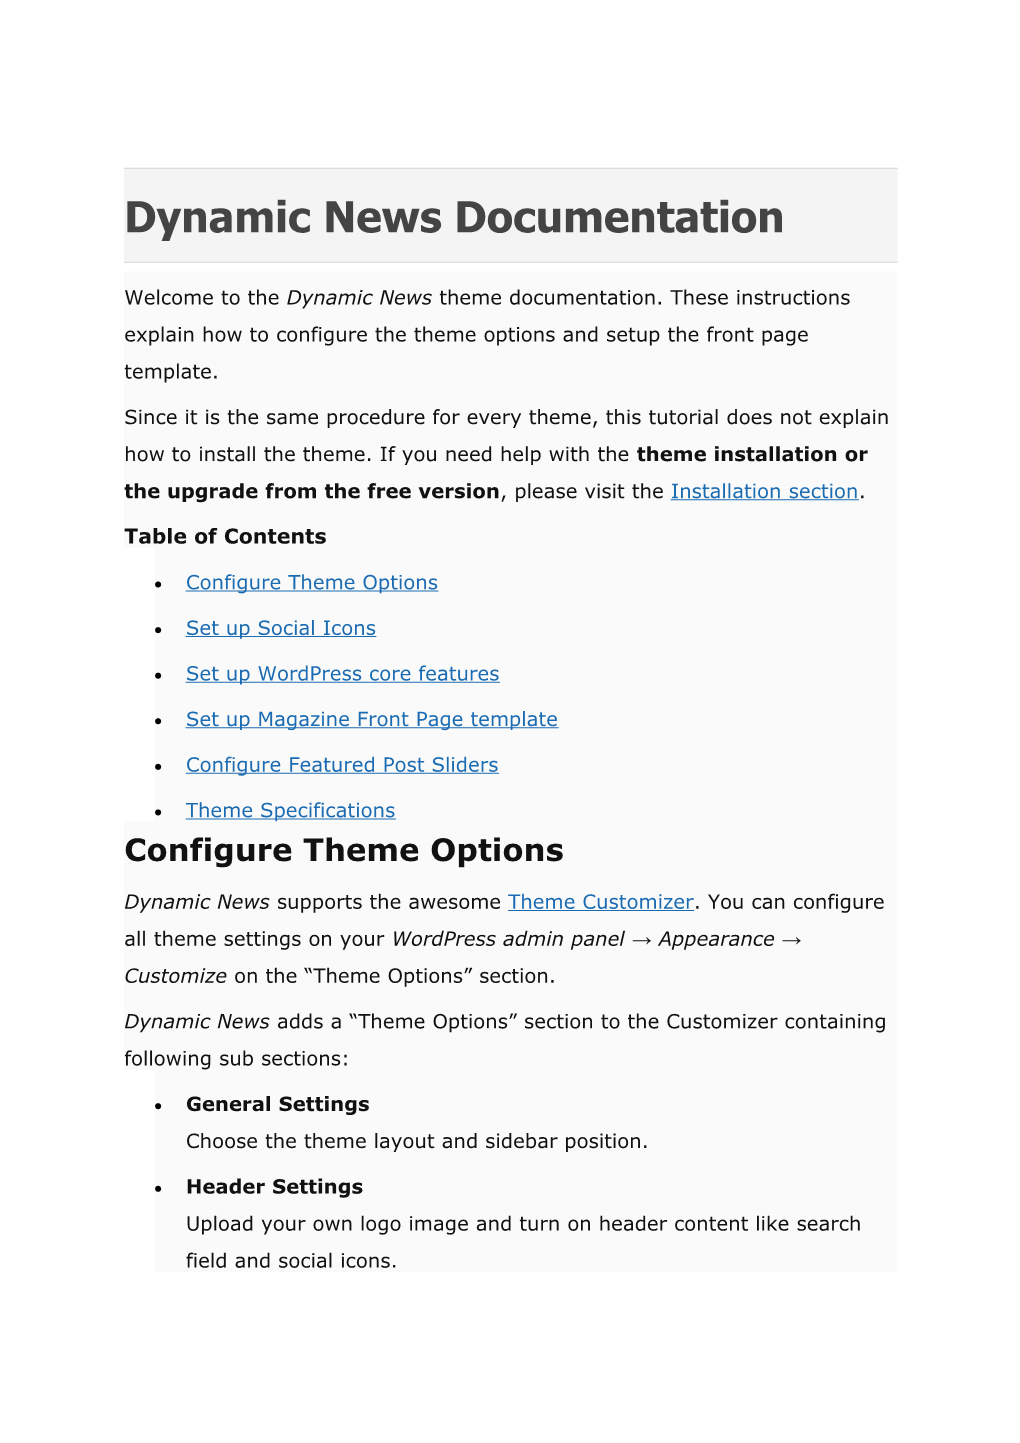 Dynamic News Wordpress Pro Theme Documentation